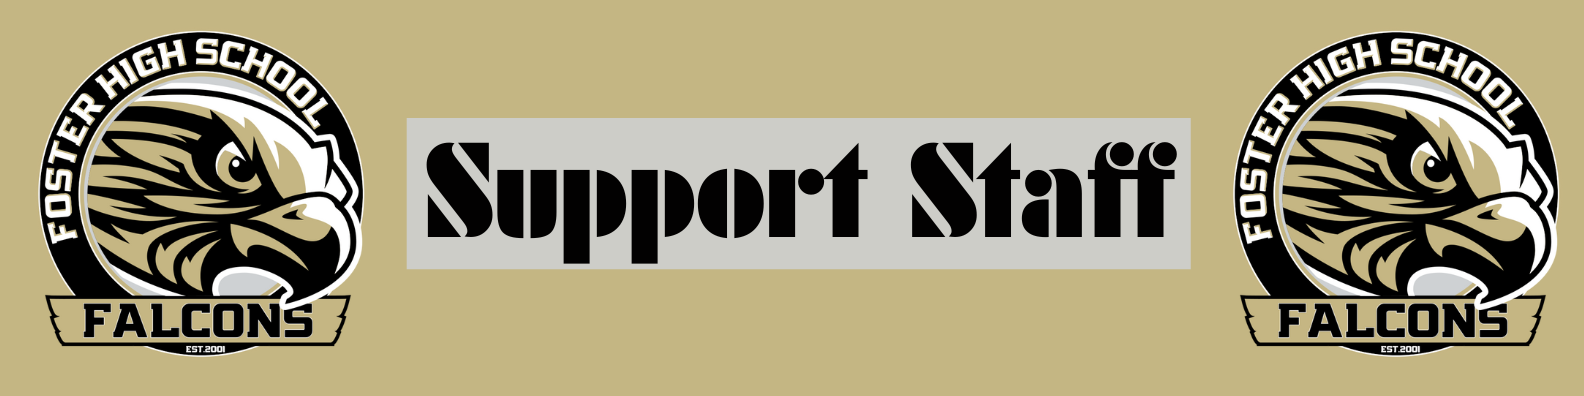 Support_Staff_Banner